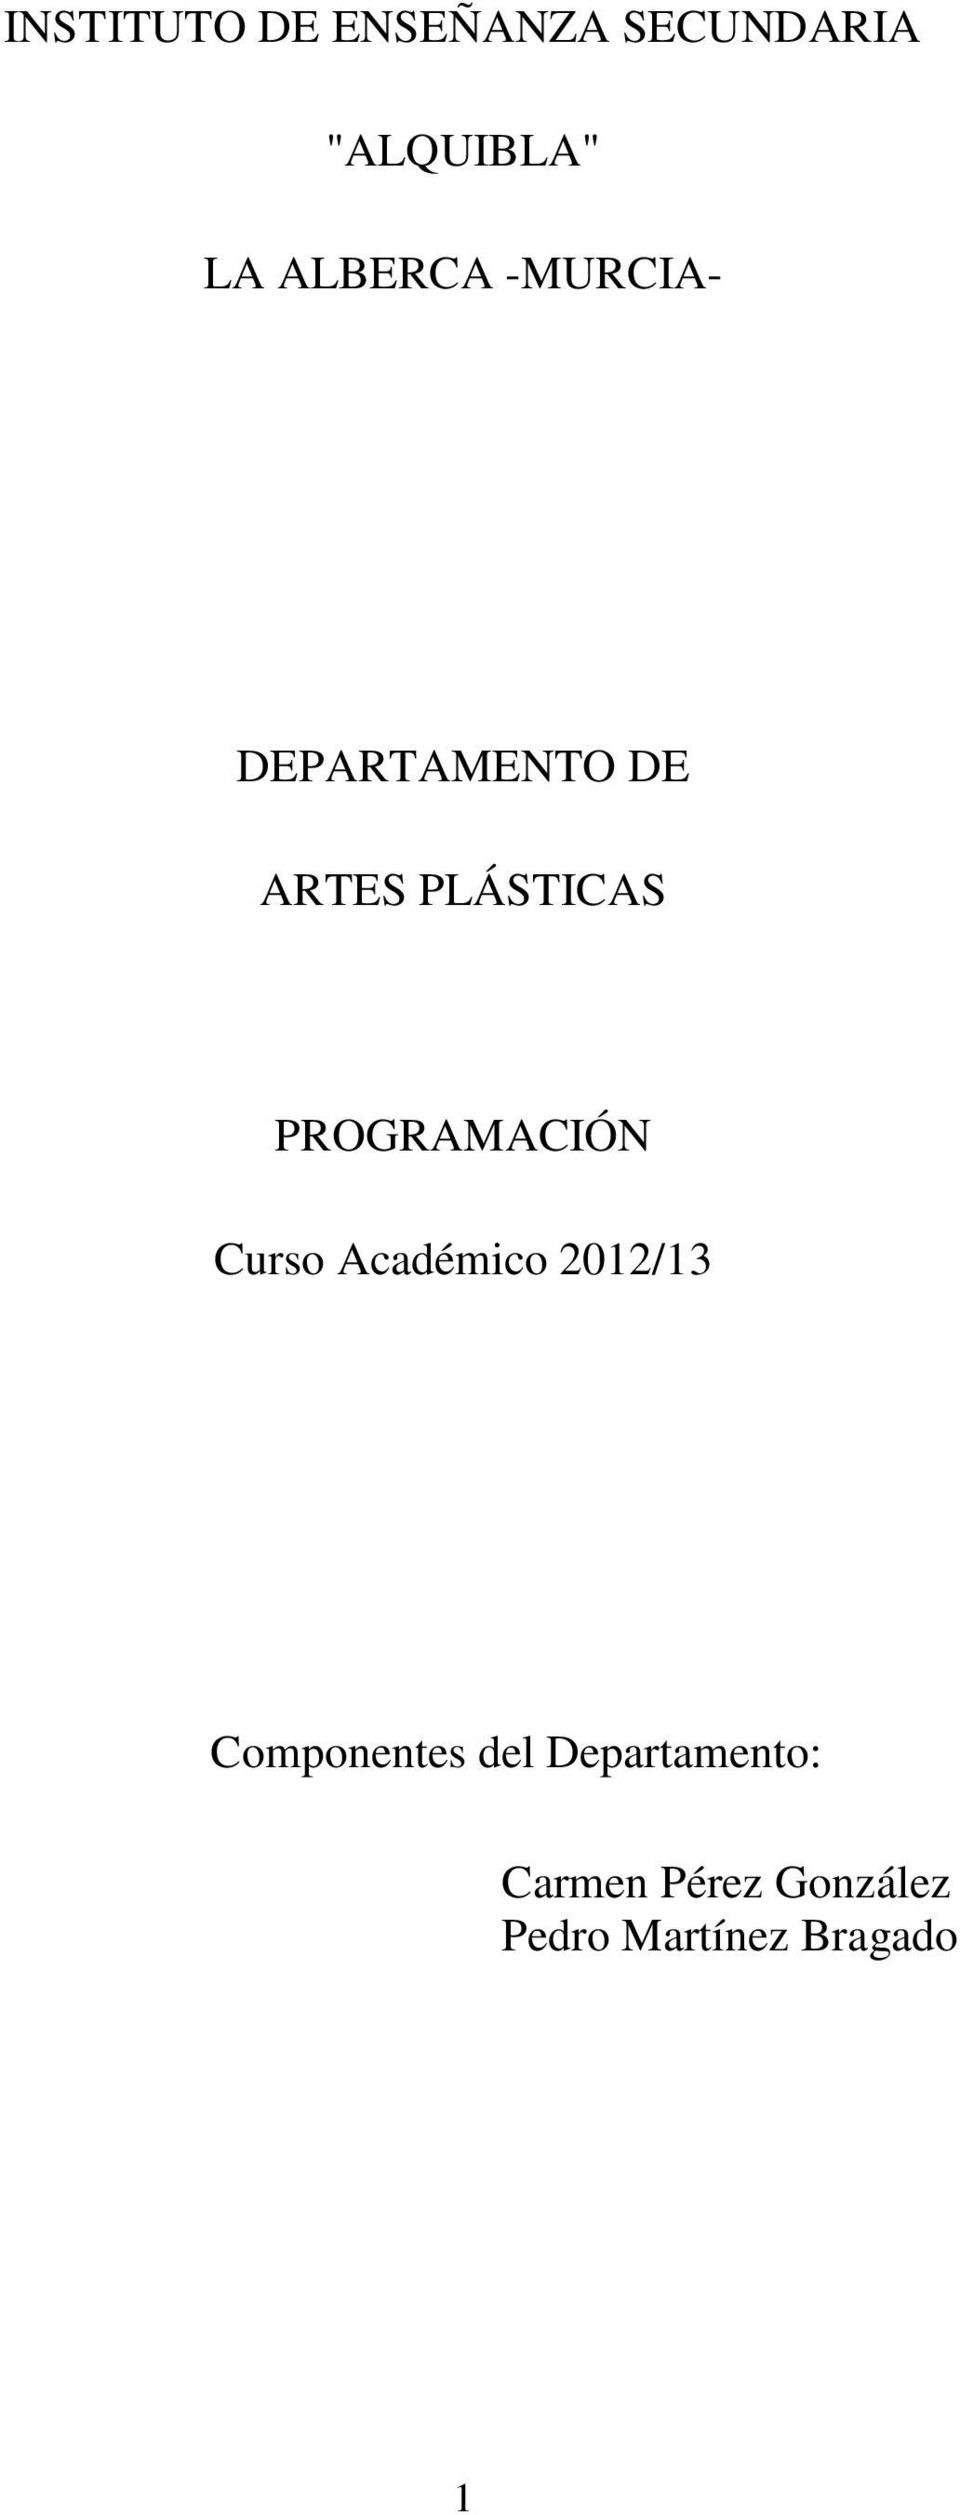 PROGRAMACIÓN Curso Académico 2012/13 Componentes del